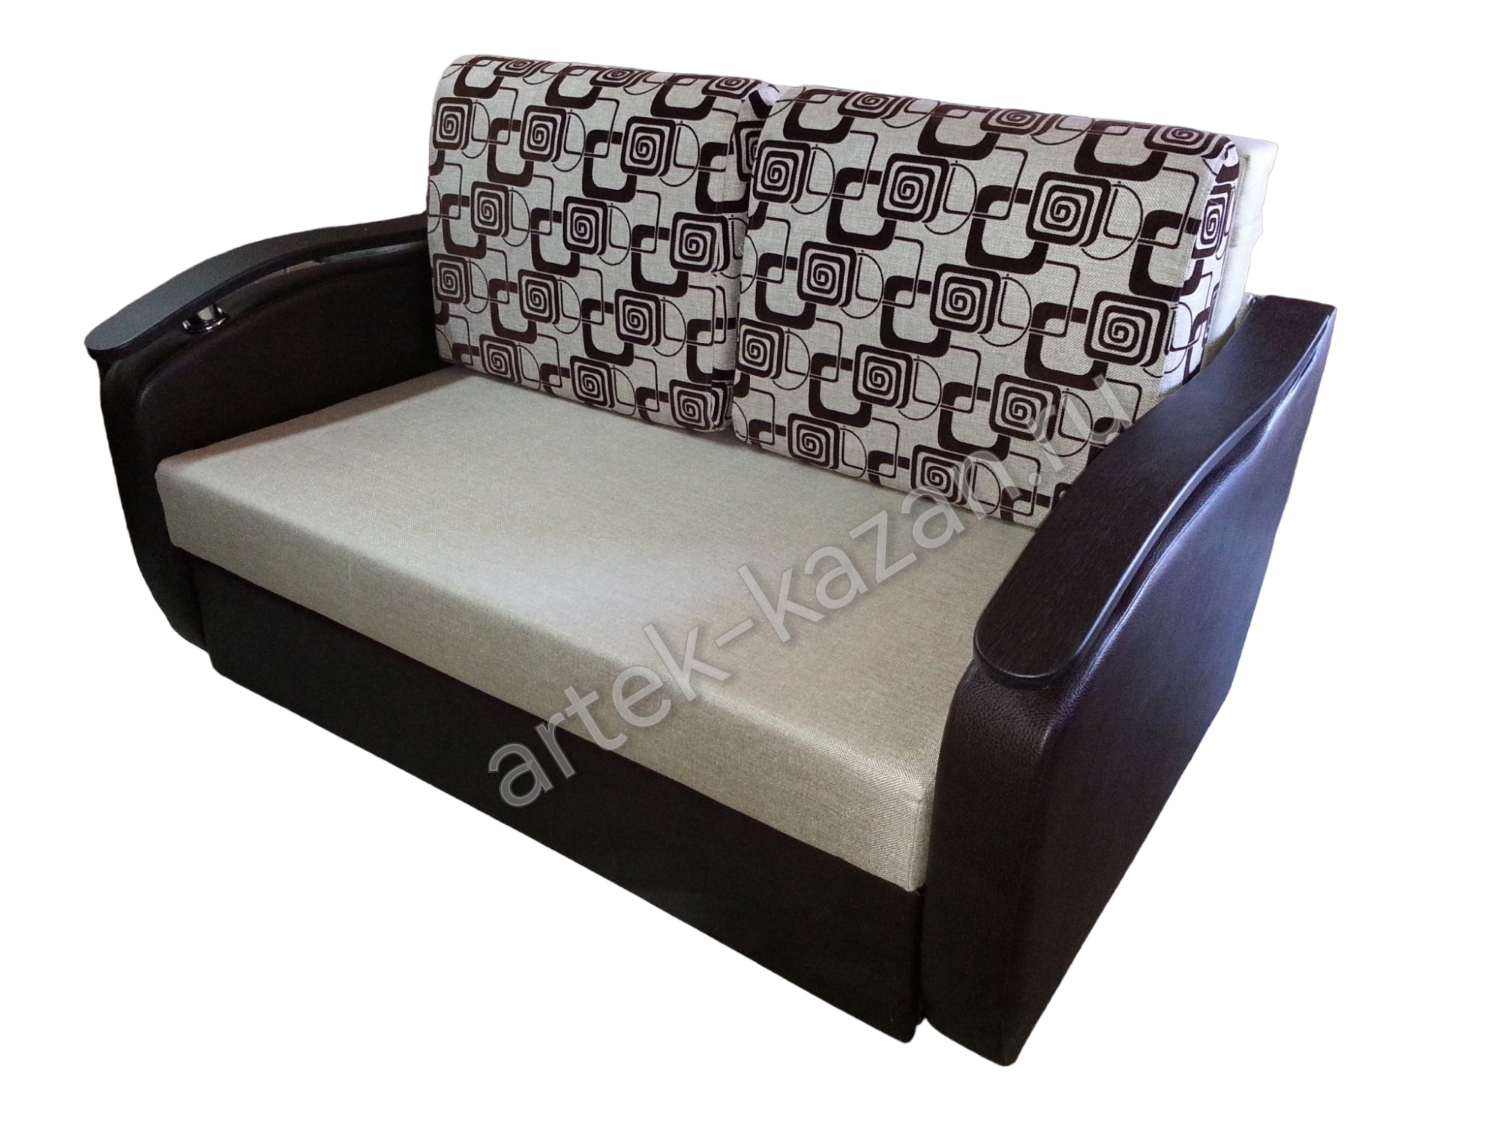 Мини диван на выкатном механизме Миник фото № 9. Купить недорогой диван по низкой цене от производителя можно у нас.